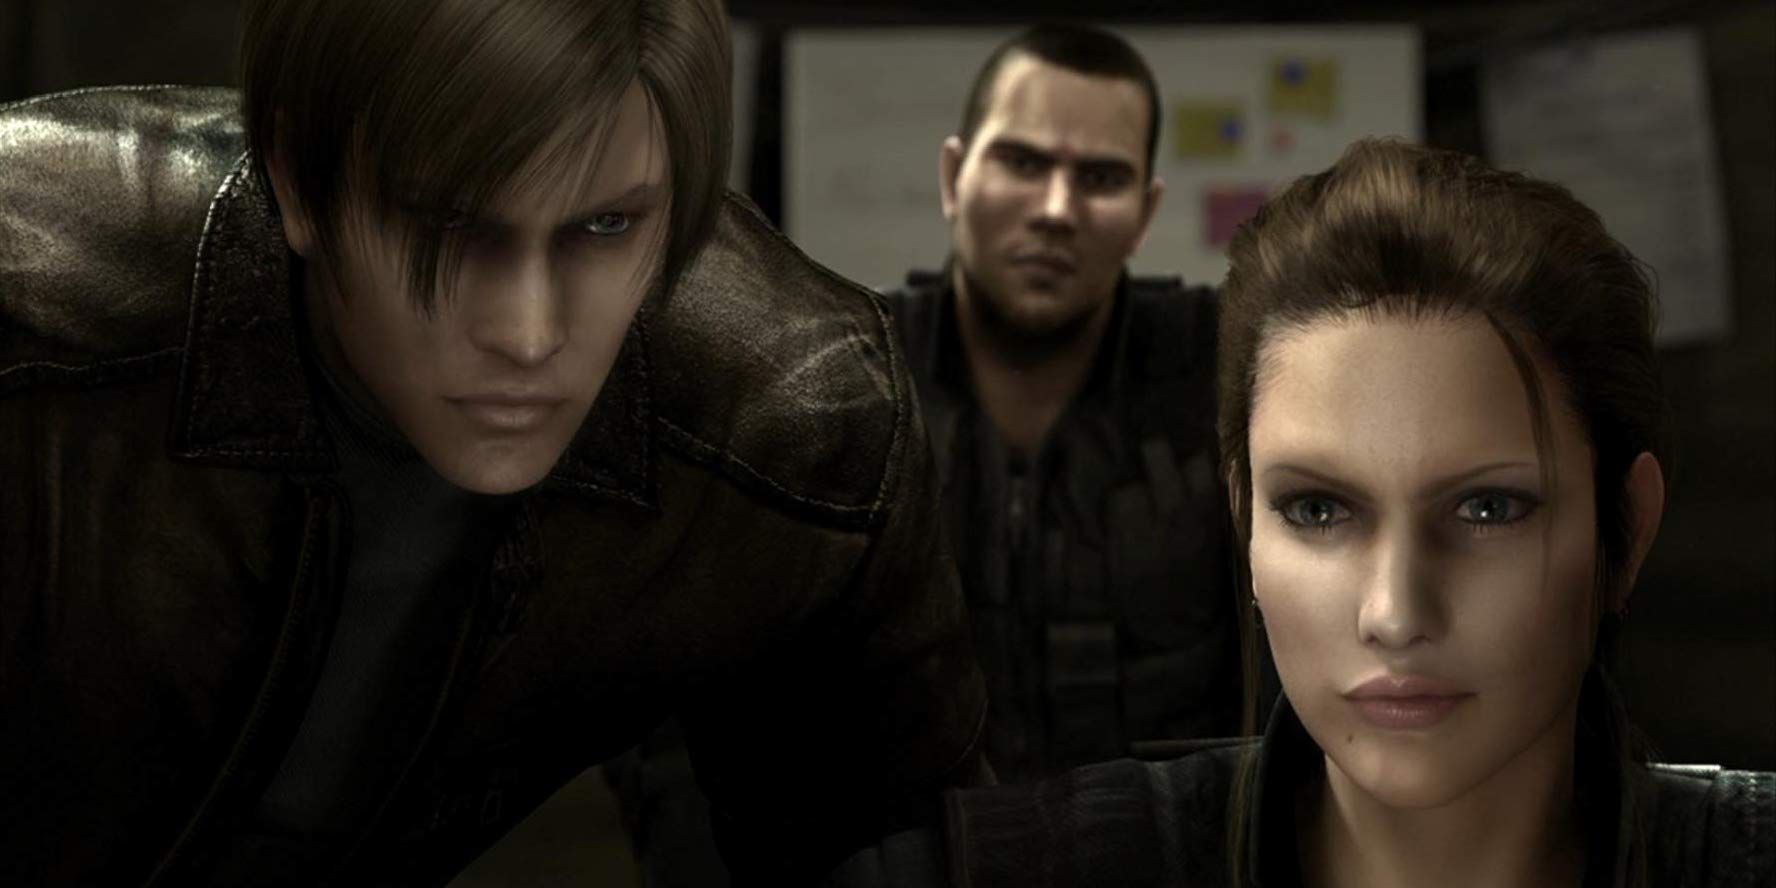 The cast of Resident Evil: Degeneration